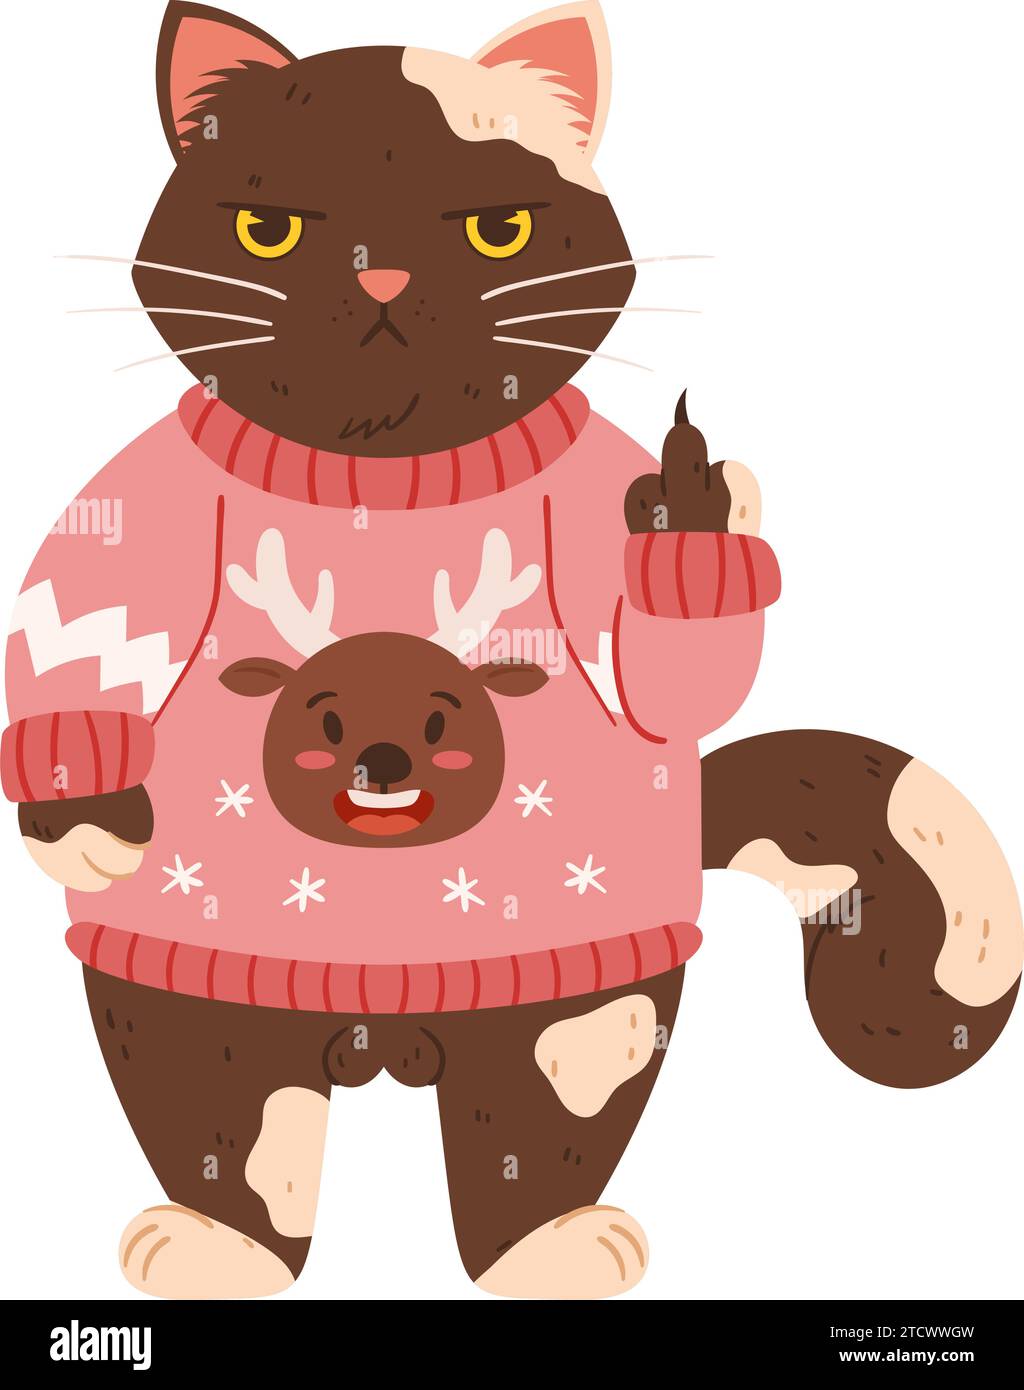 Eine verärgerte Katze steht in einem Weihnachtspullover und zeigt seinen  Mittelfinger. Grumpy Fluffy Cat ist eine braune Katze, die einen rosa  Pullover und eine Zeichnung trägt Stock-Vektorgrafik - Alamy